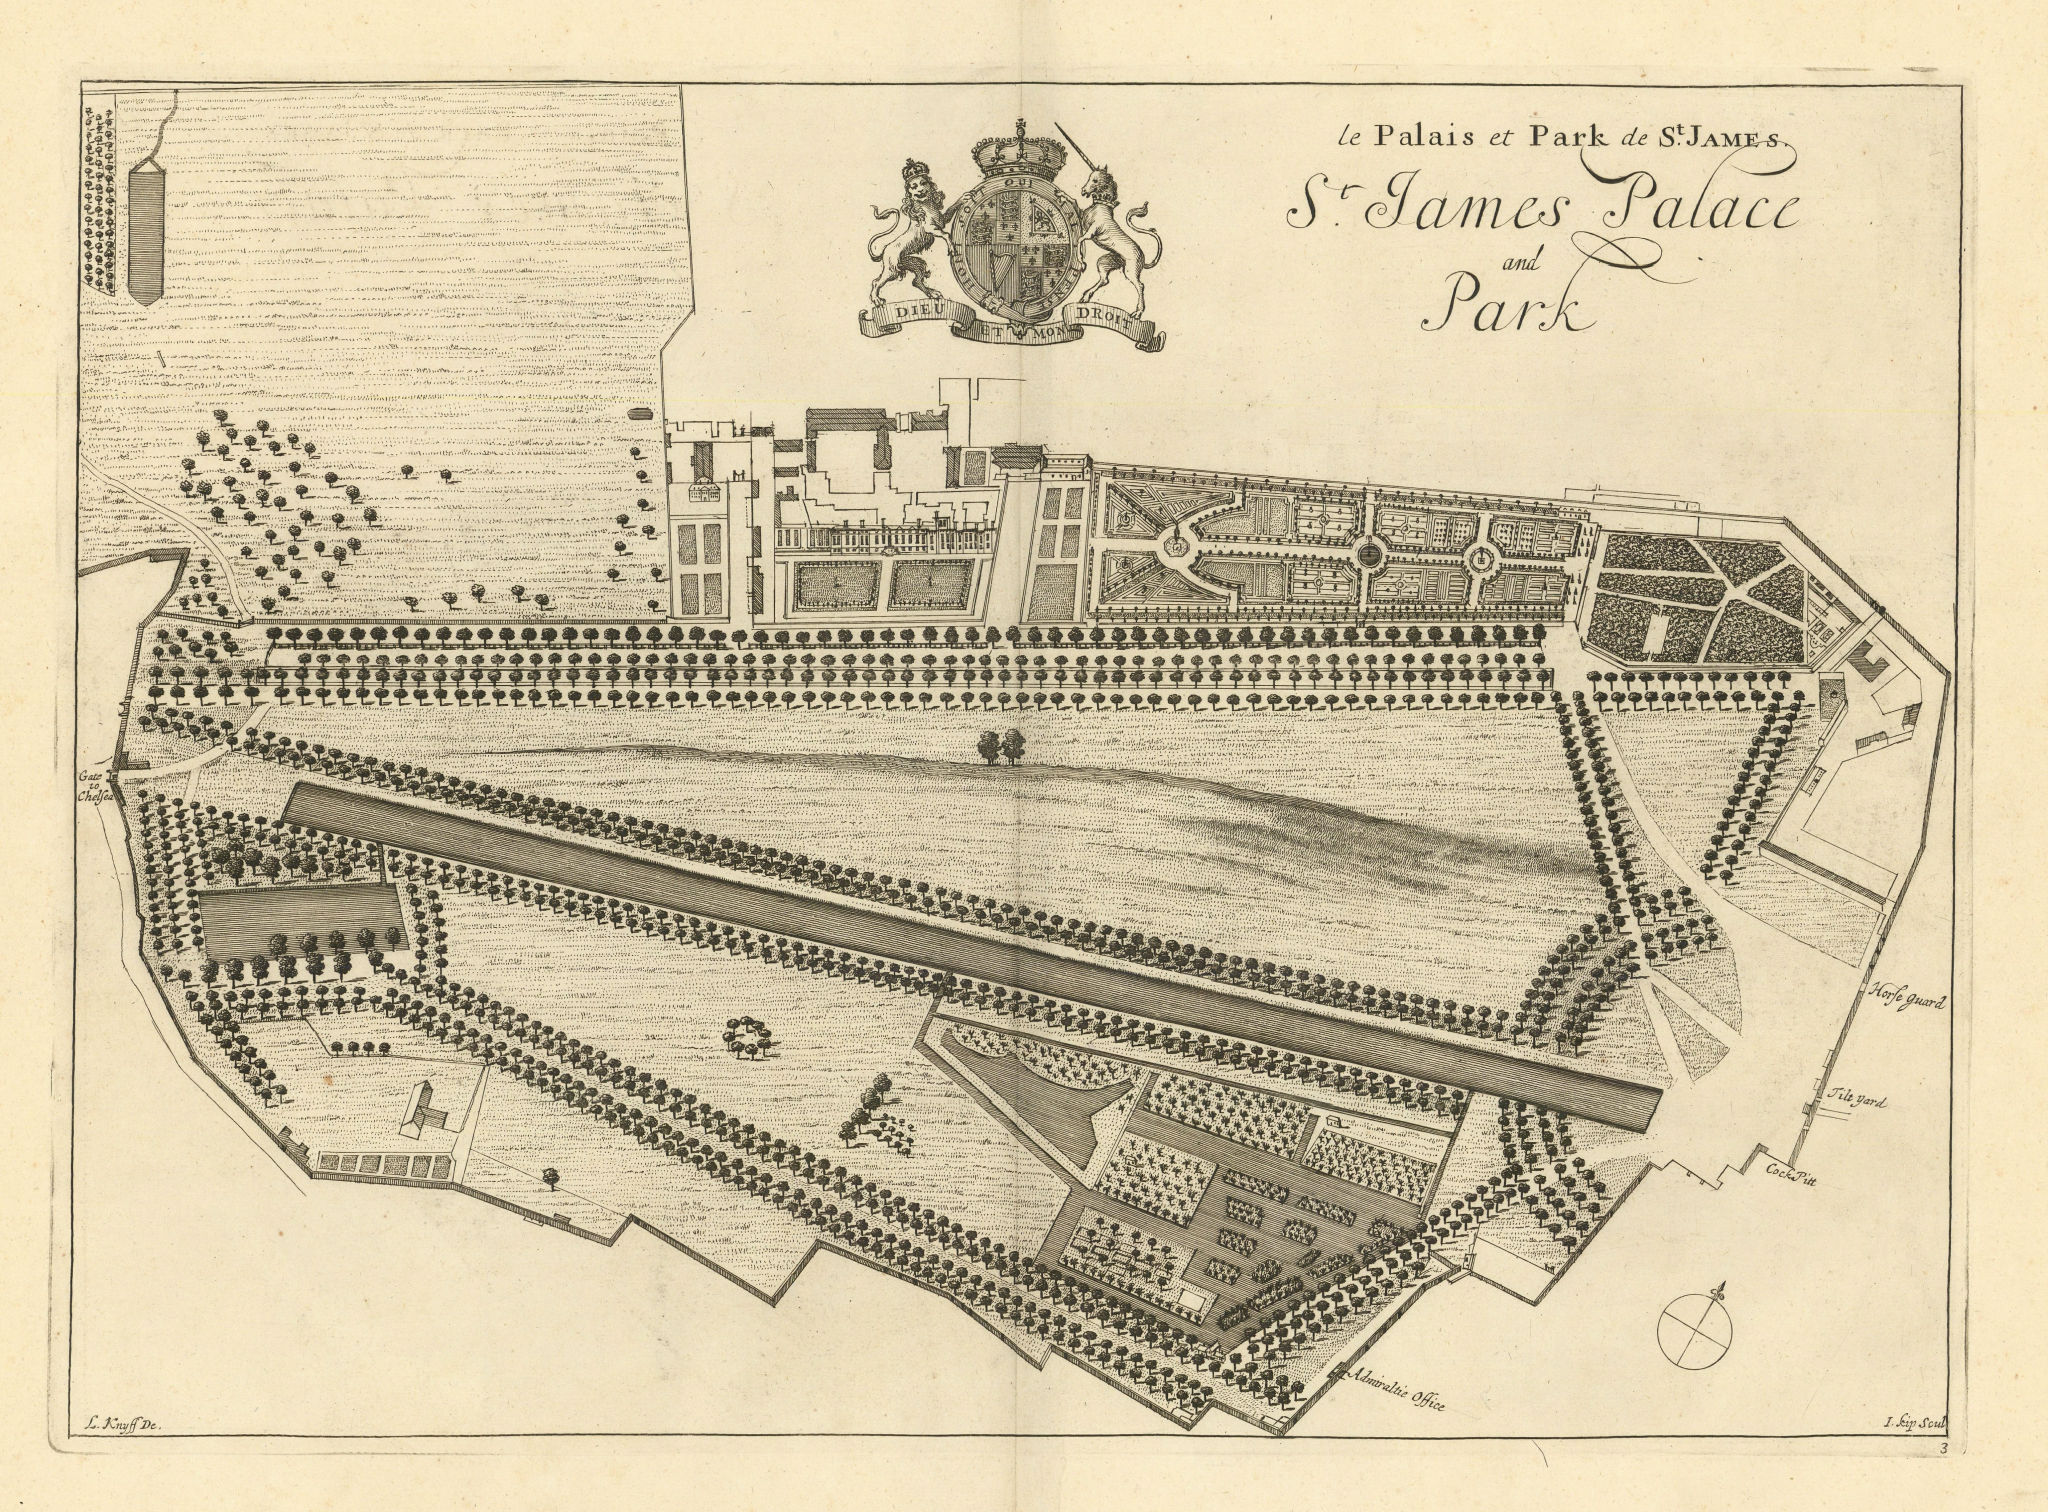 Associate Product St. James Palace and Park by Kip & Knyff. Le palais… de St James. London 1709